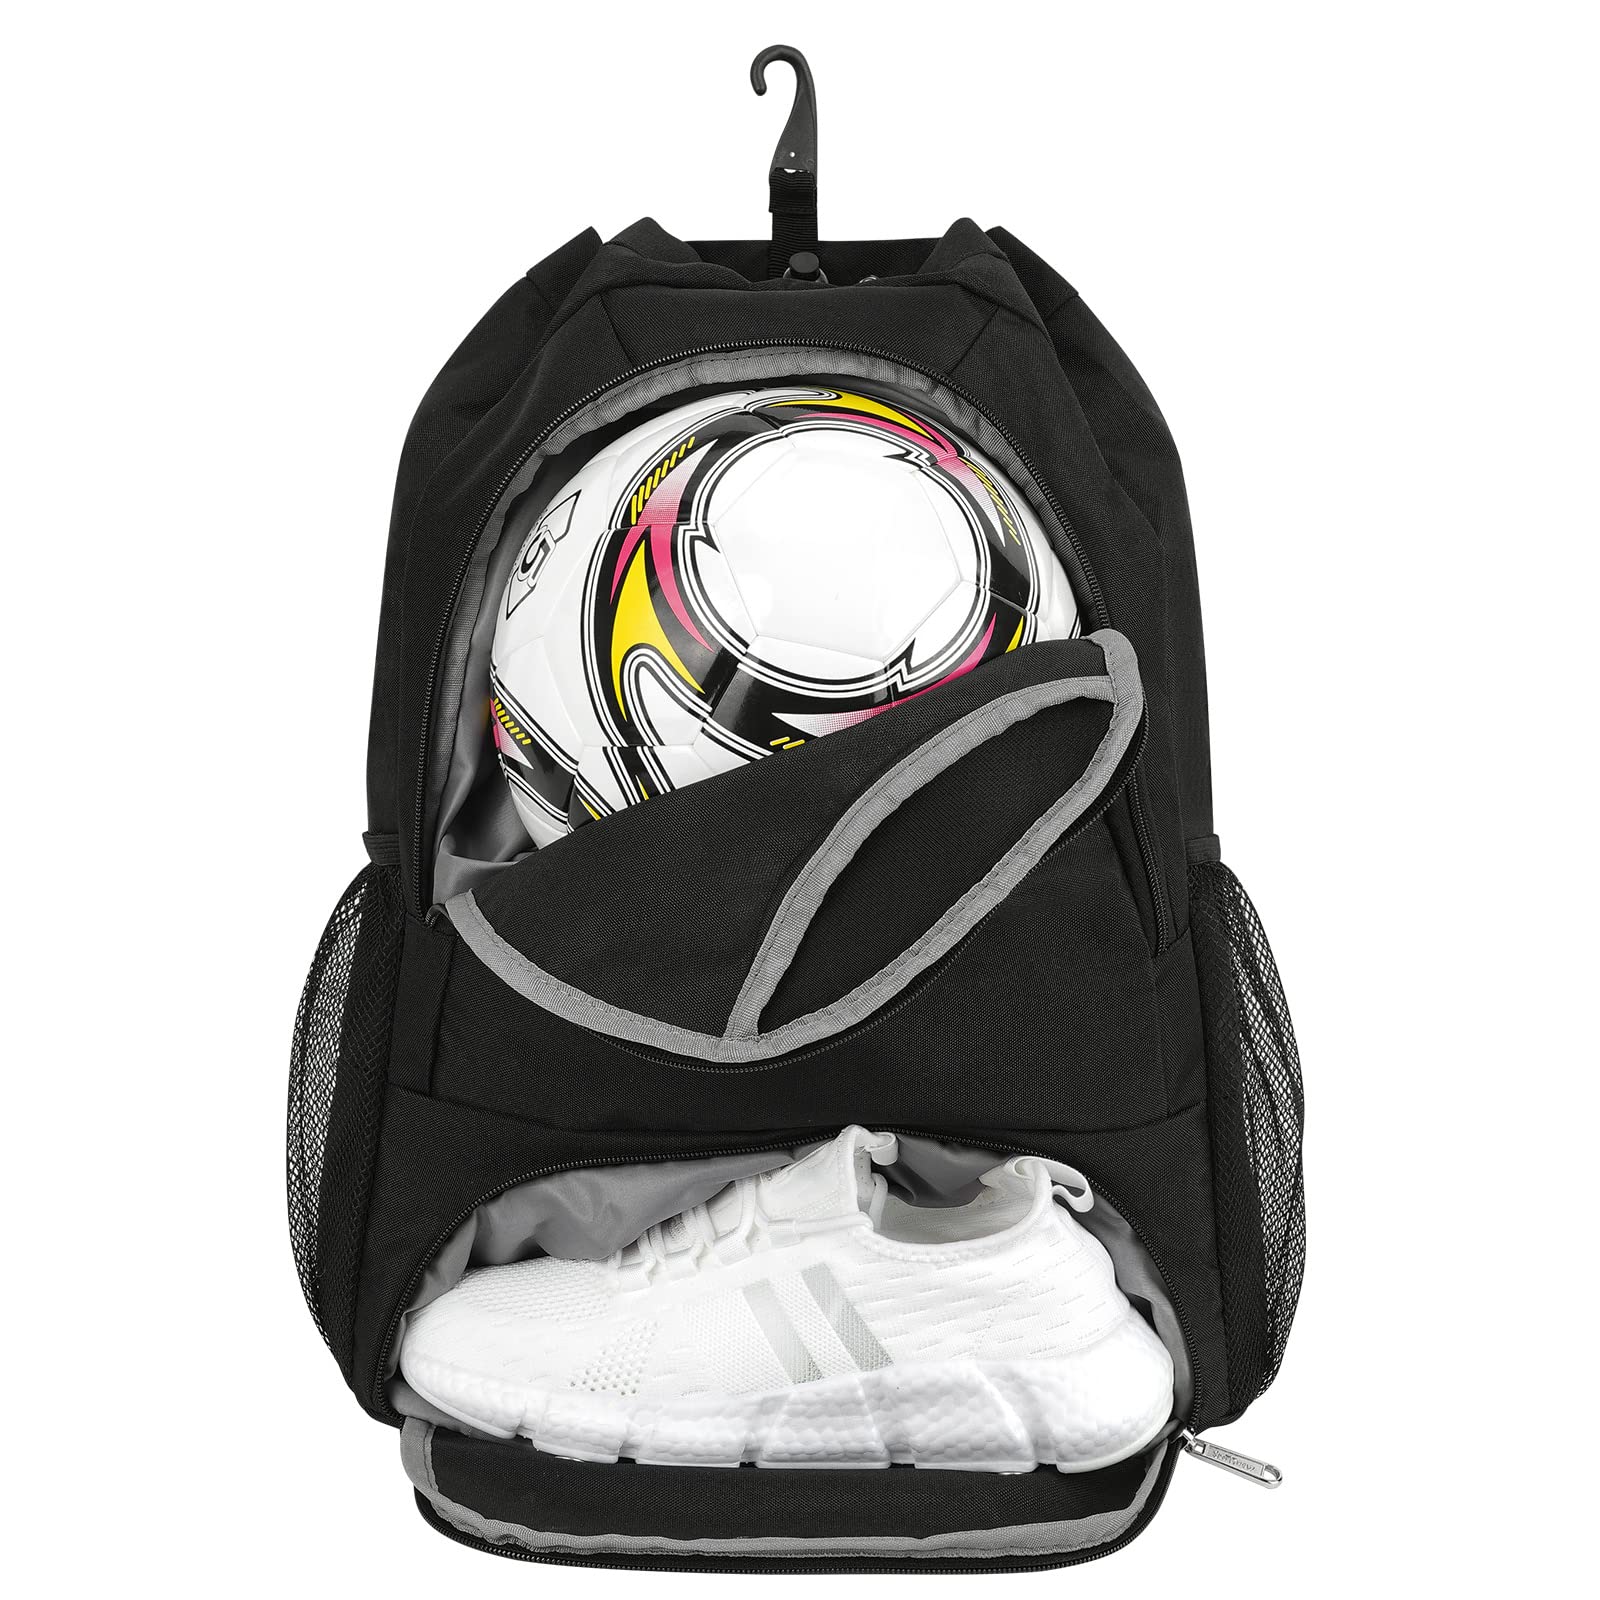 Basketball Bag Ball Compartment